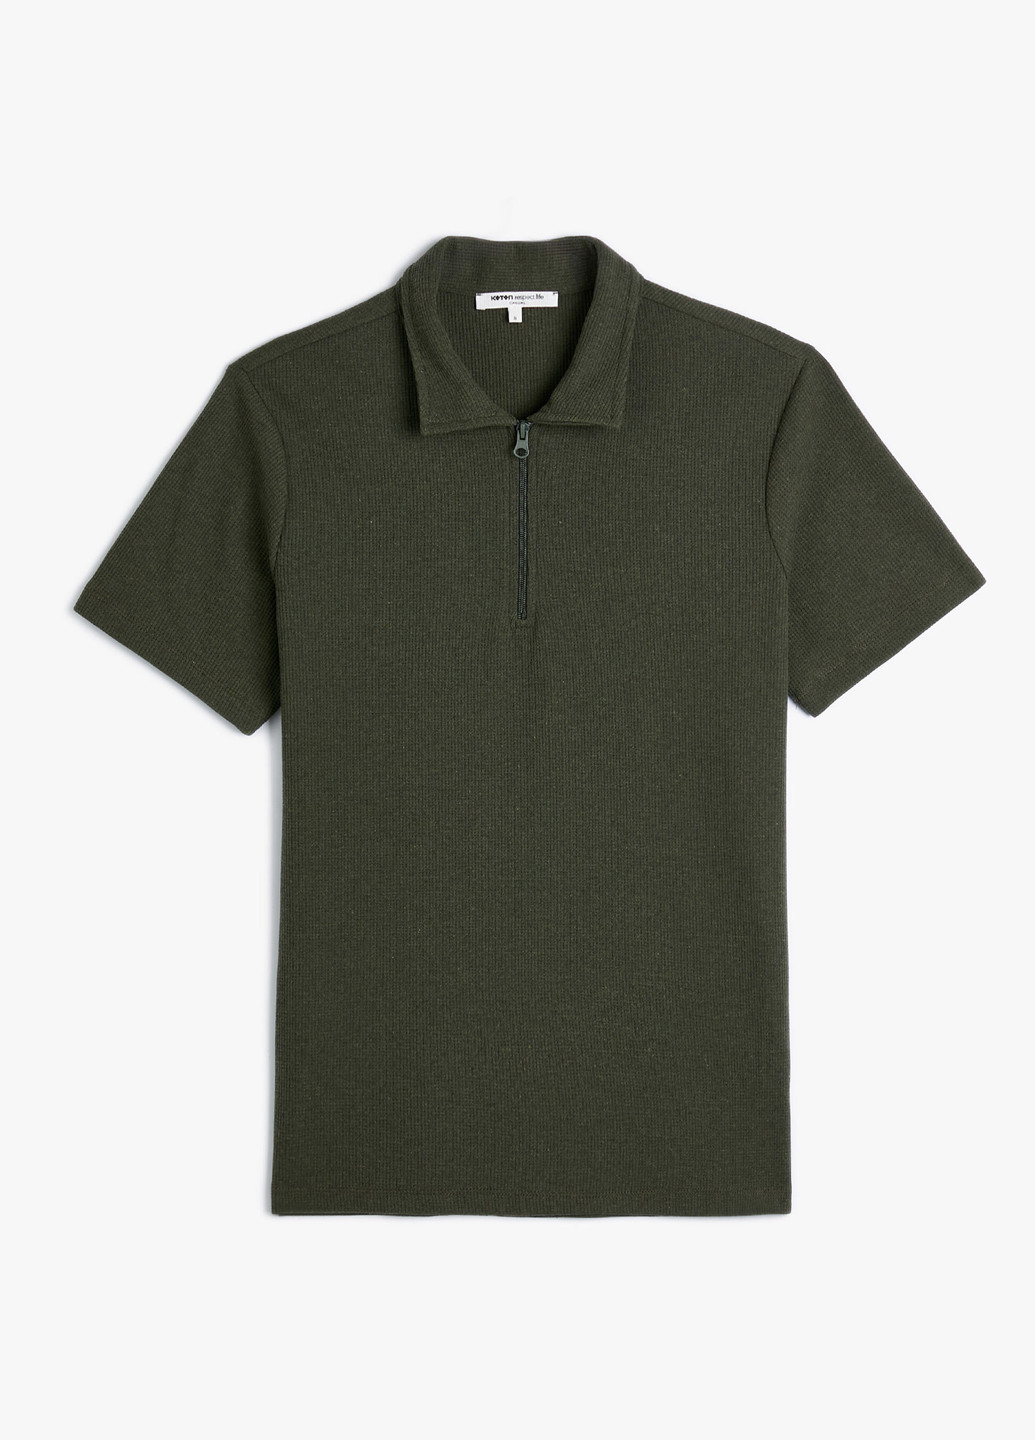 Оливковая (хаки) футболка-поло для мужчин KOTON однотонная